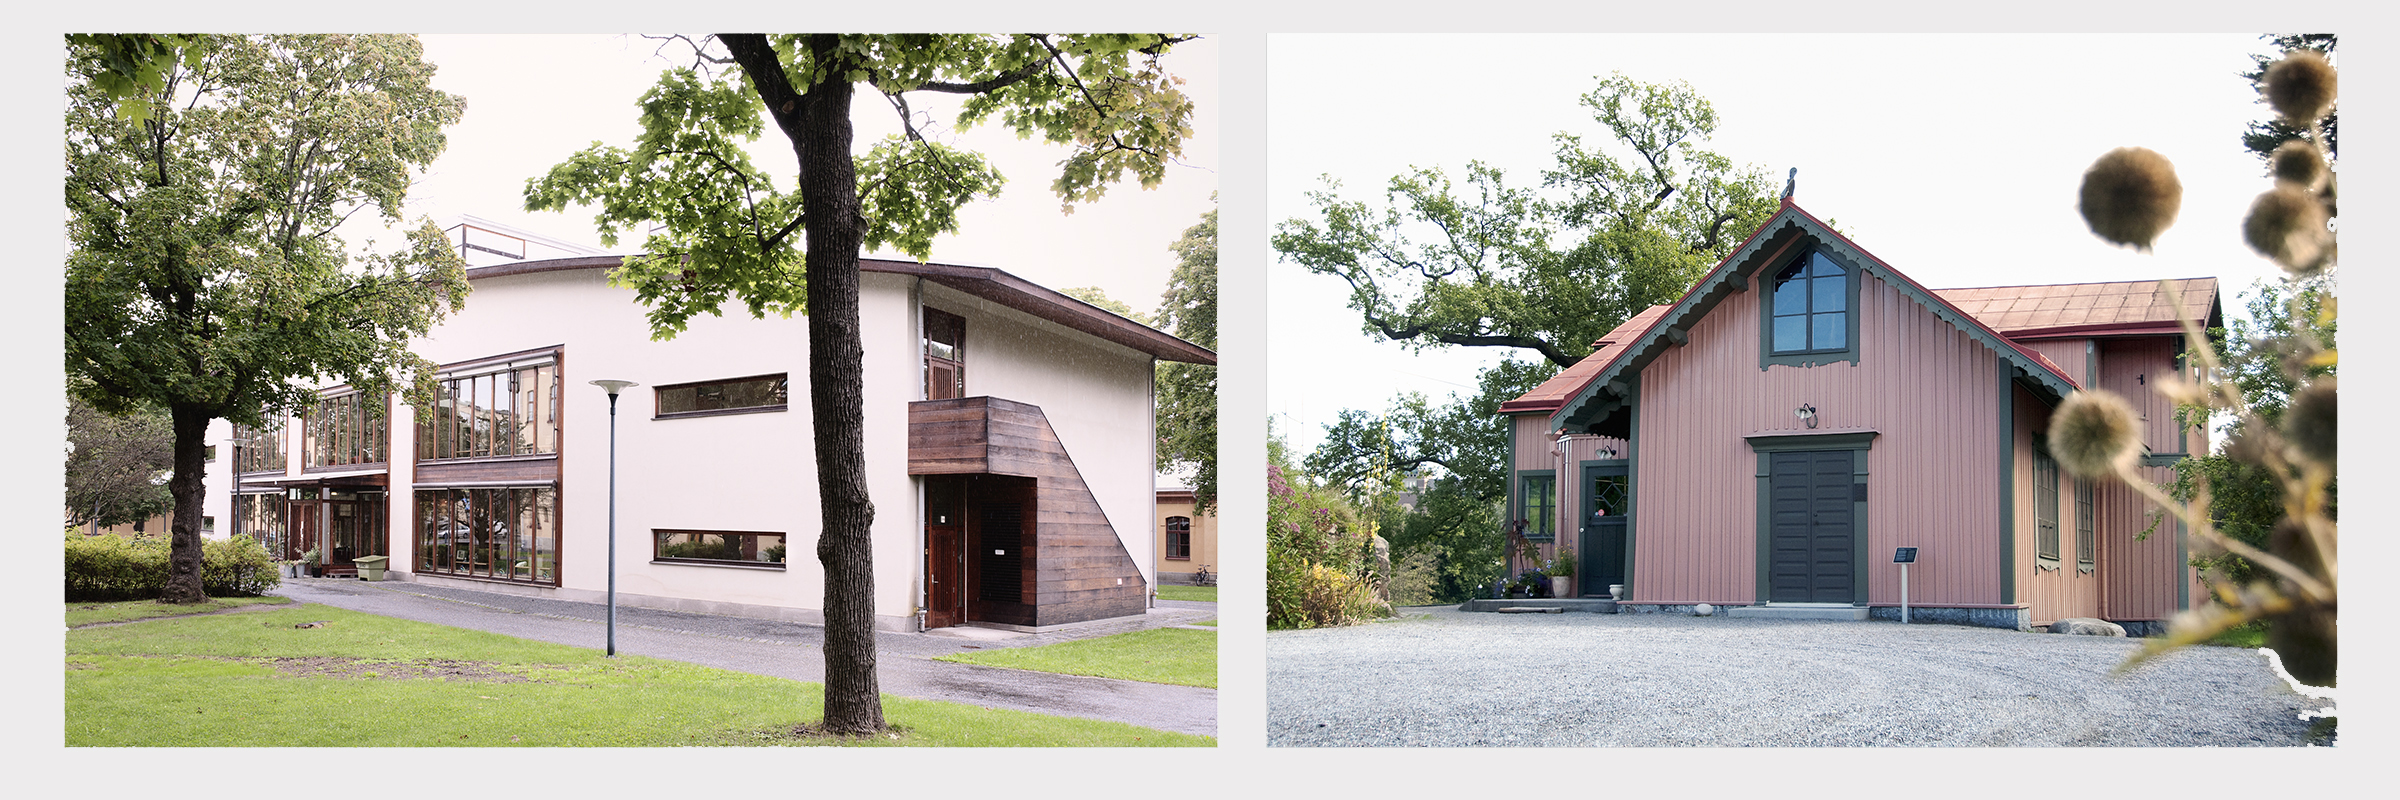 Huset vid AlbaNova, en vit modern byggnad, samt huset i Bergianska trädgården, en rosa villa från 1800-talet.